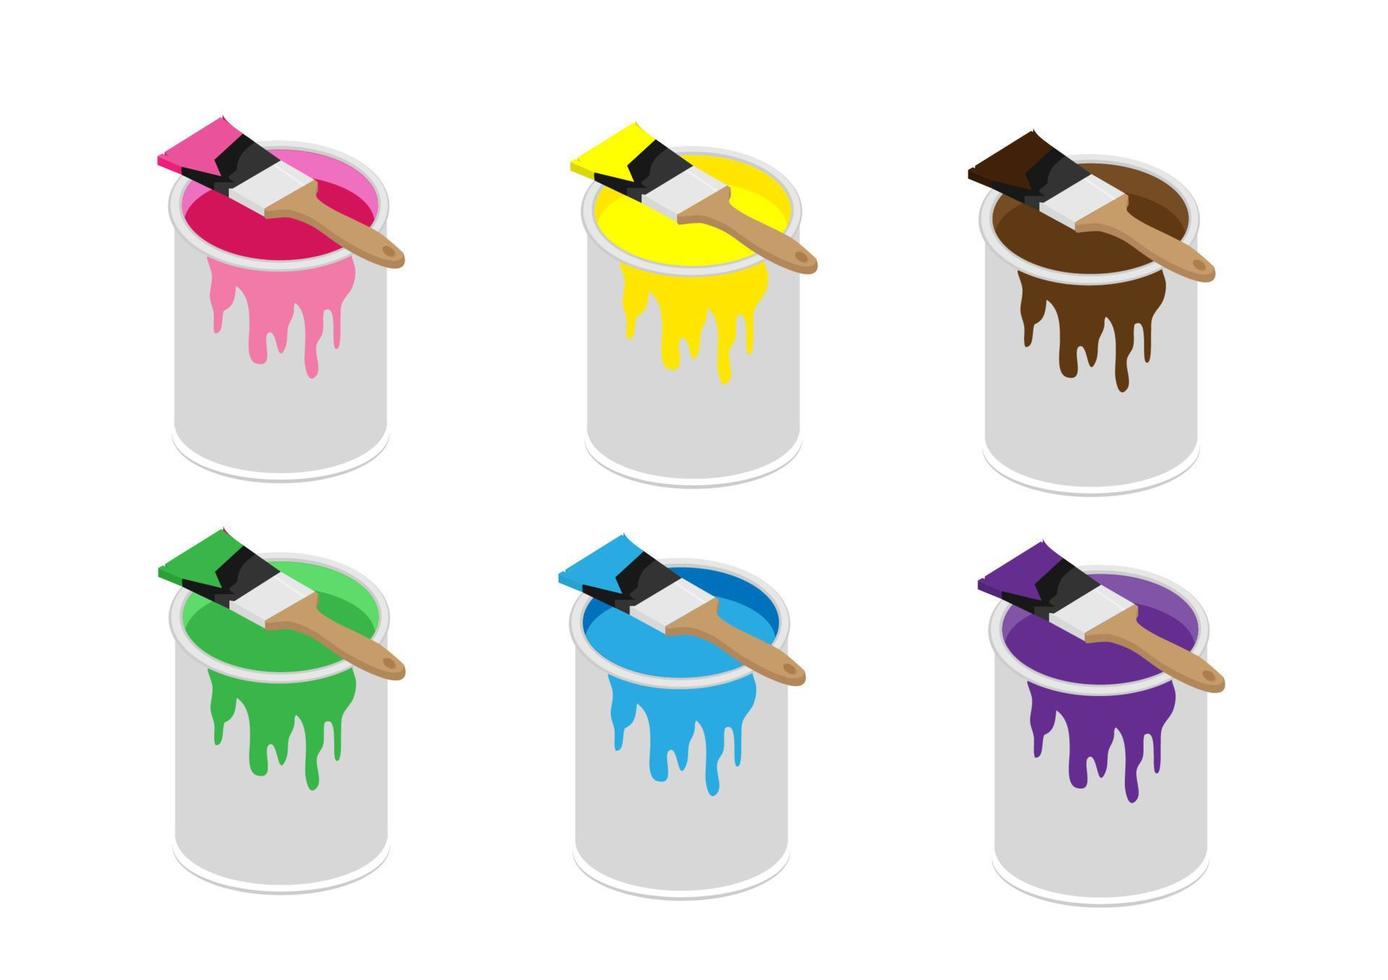 barattoli di vernice in metallo disponibili in rosa, verde, viola, marrone, giallo e blu con spazzole con manico in legno. vettore di illustrazione del fumetto in stile piatto